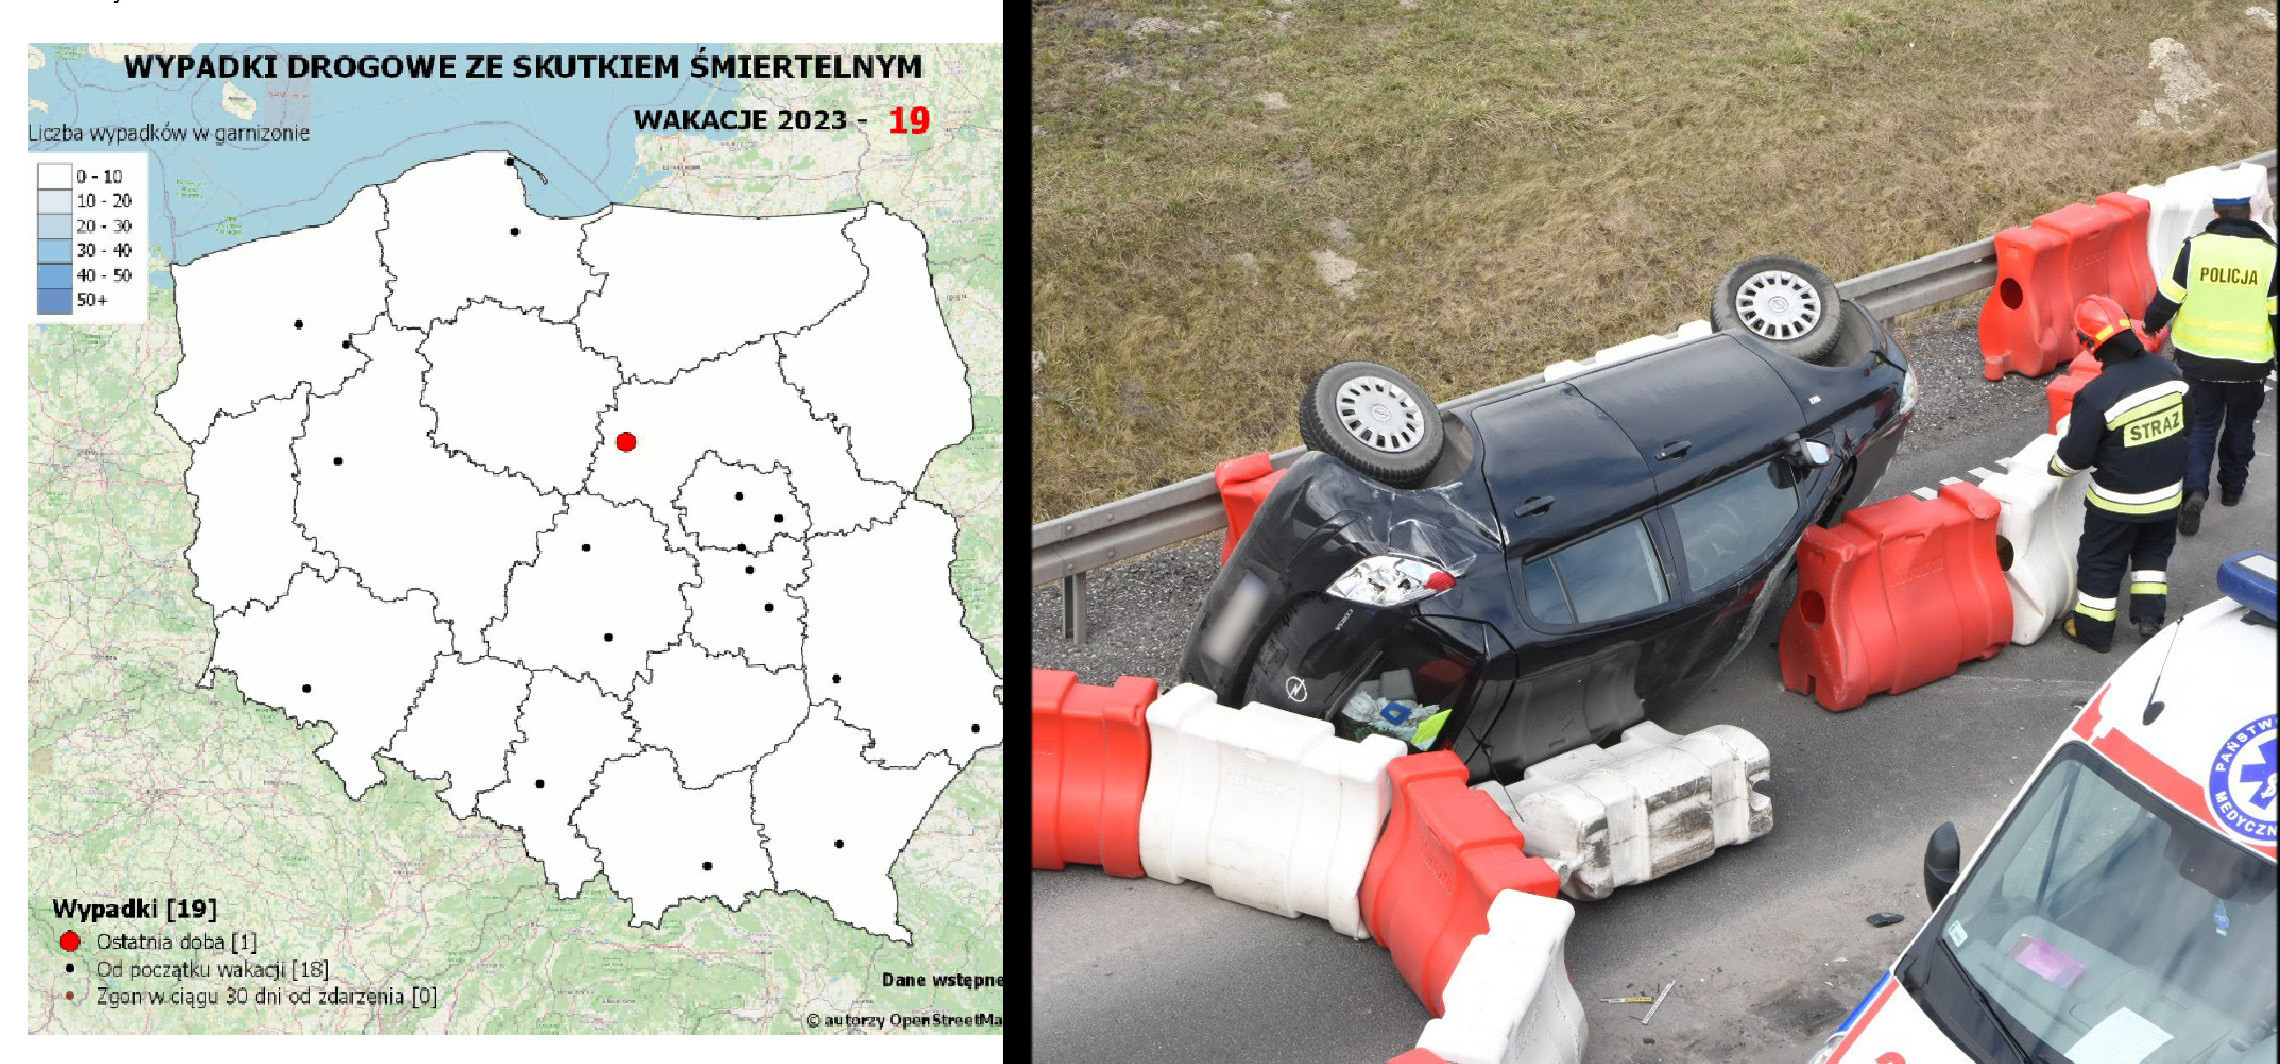 Inowrocław - W tych miejscach doszło do śmiertelnych wypadków drogowych